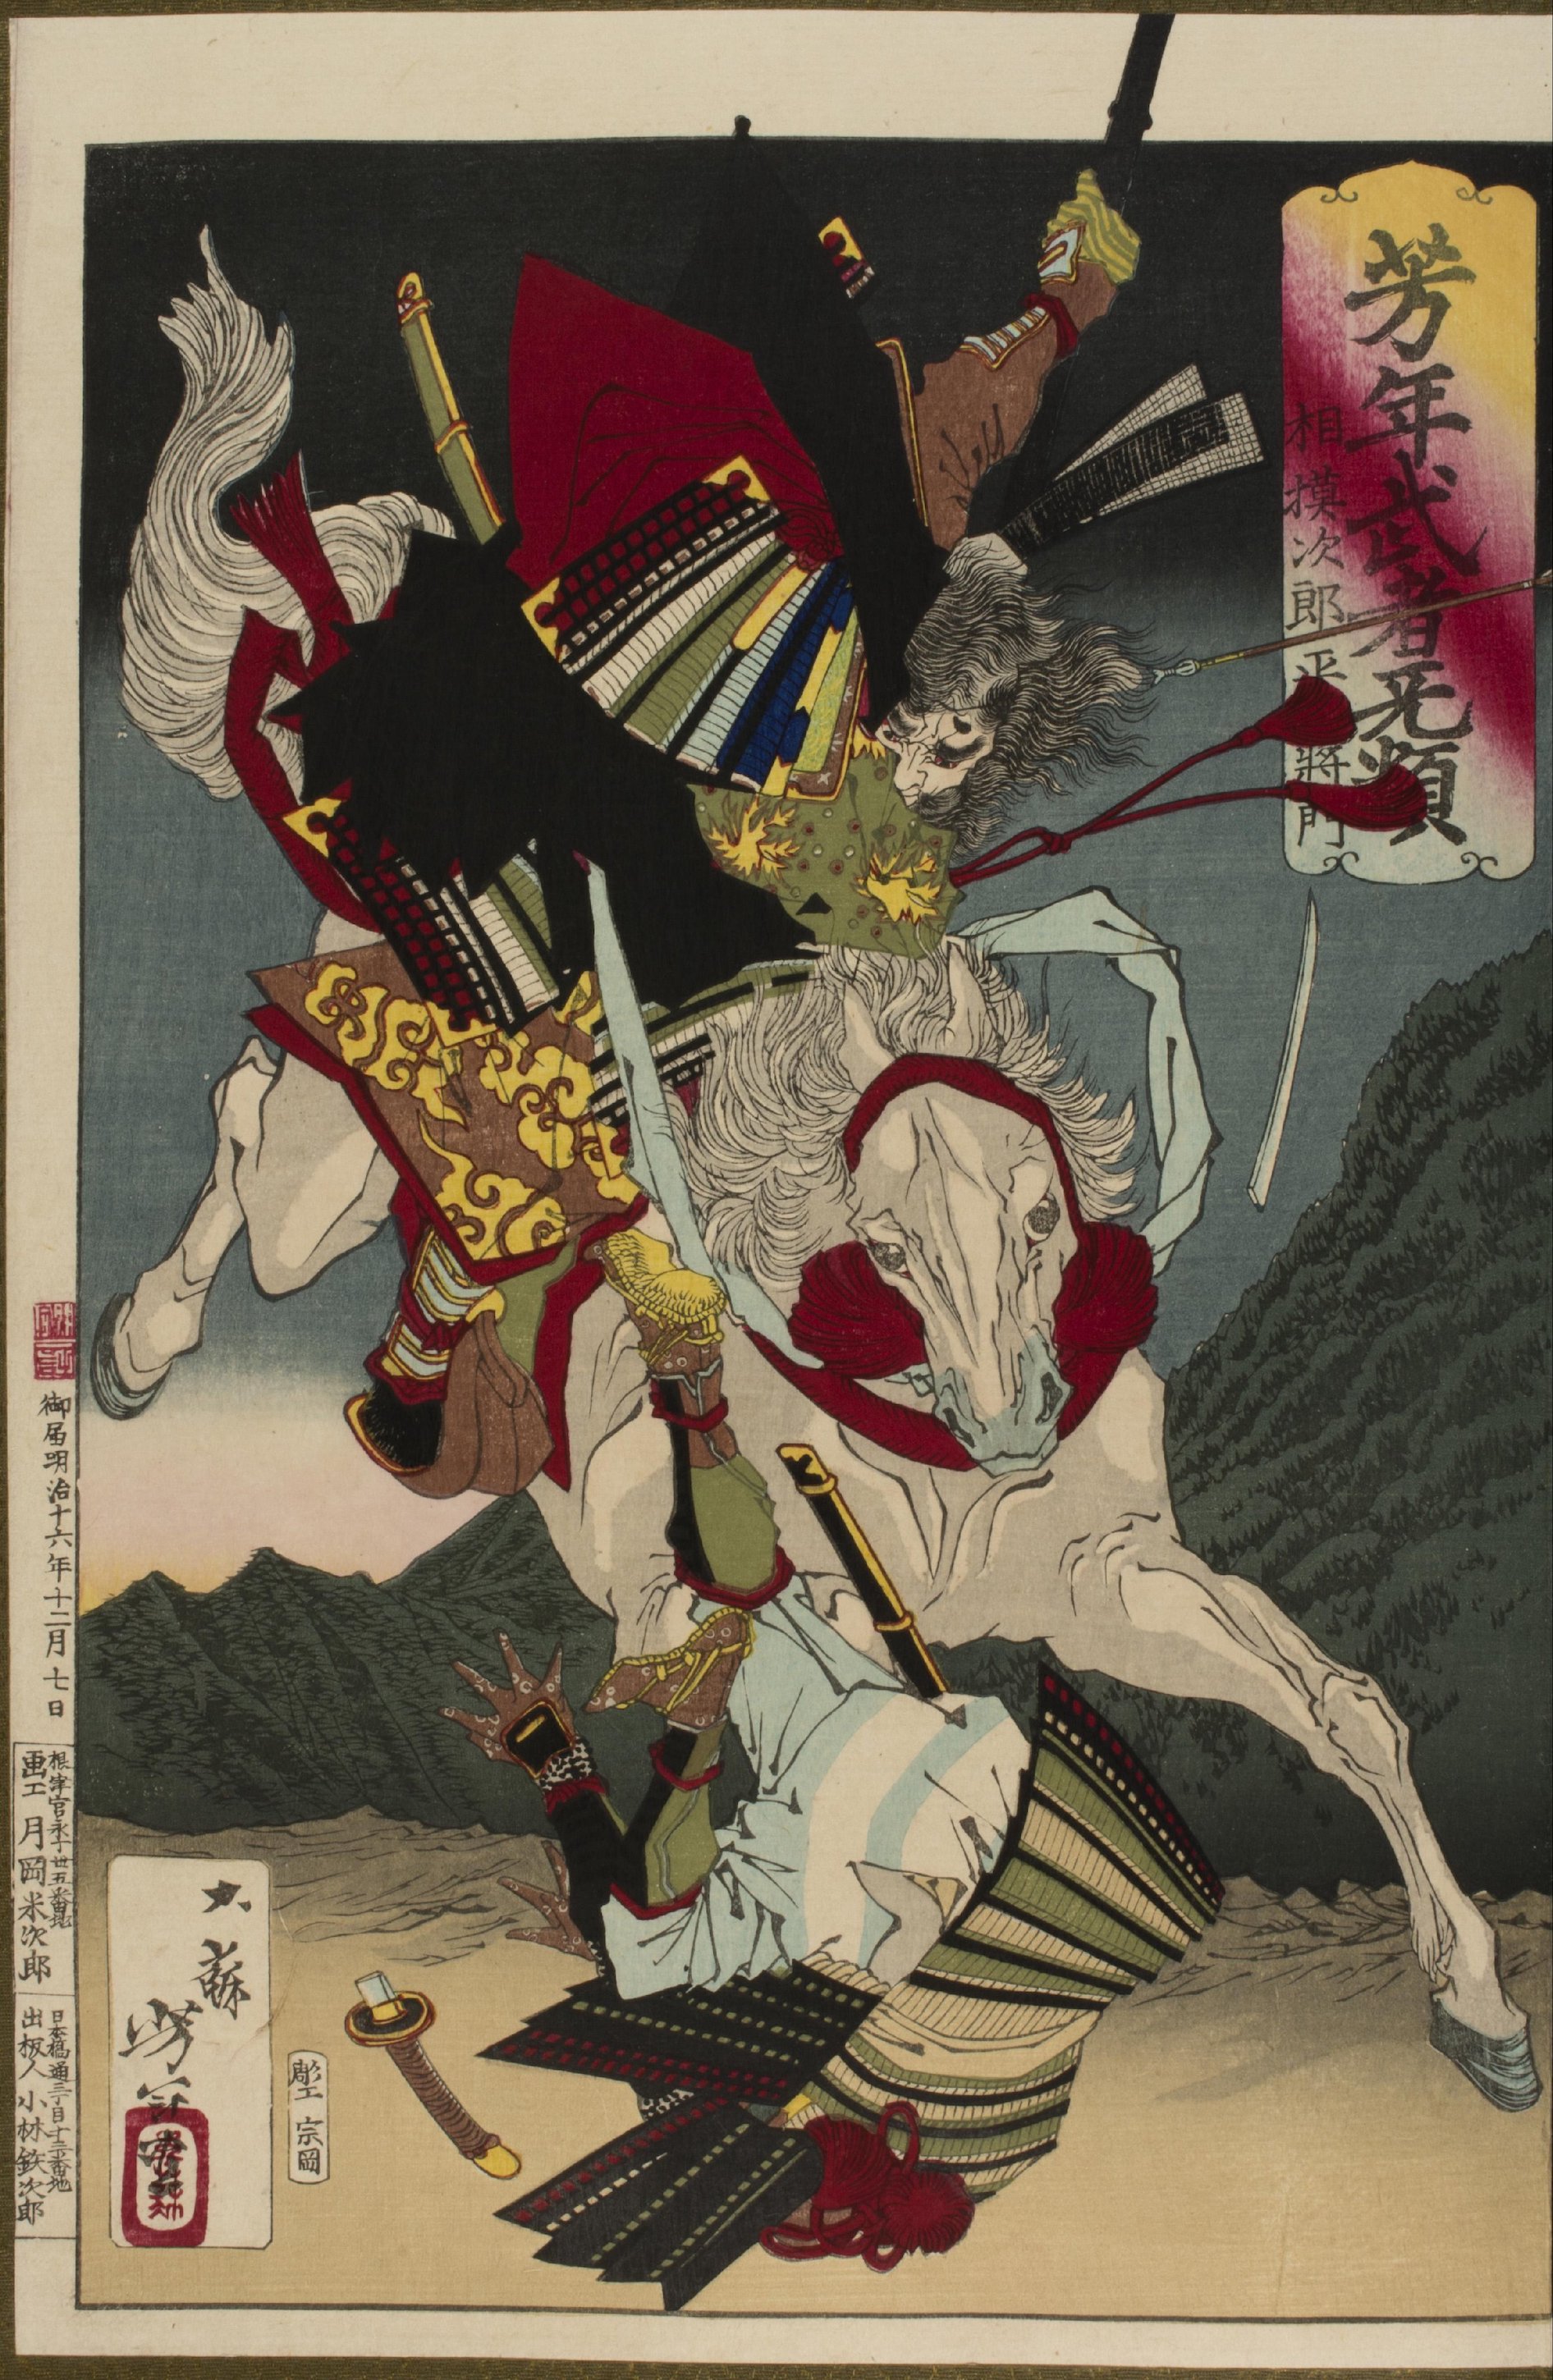 相模次郎平将门骑马攻击对手 by  月冈芳年 - 1883 - 39.4 × 26.7 cm 阿伯丁美术馆和博物馆